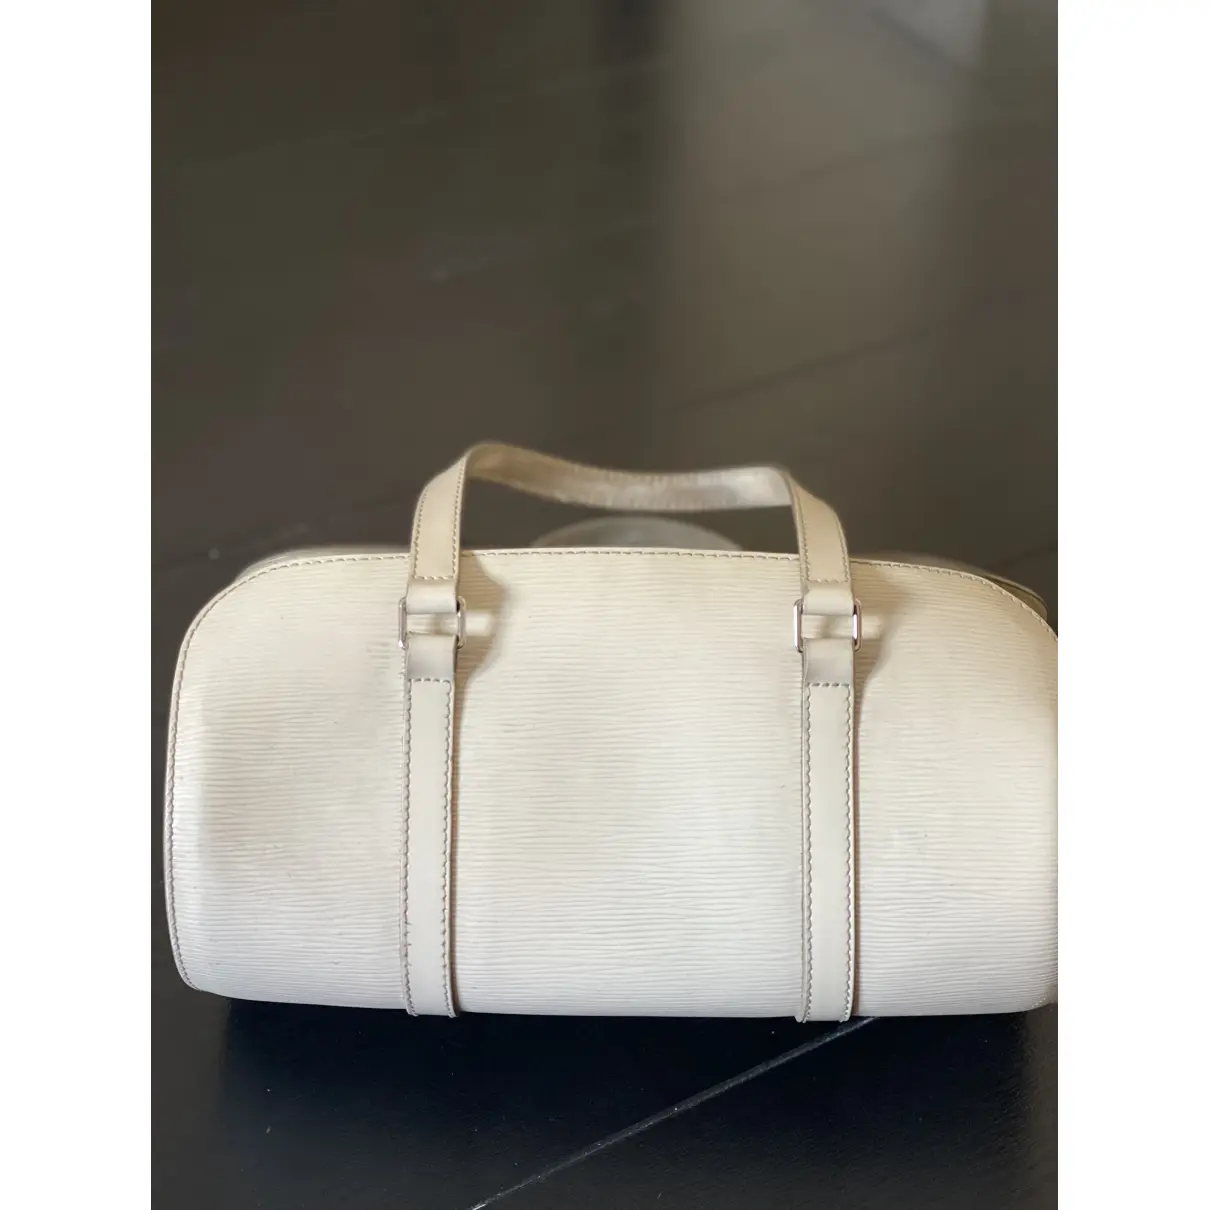 Buy Louis Vuitton Soufflot leather handbag online - Vintage